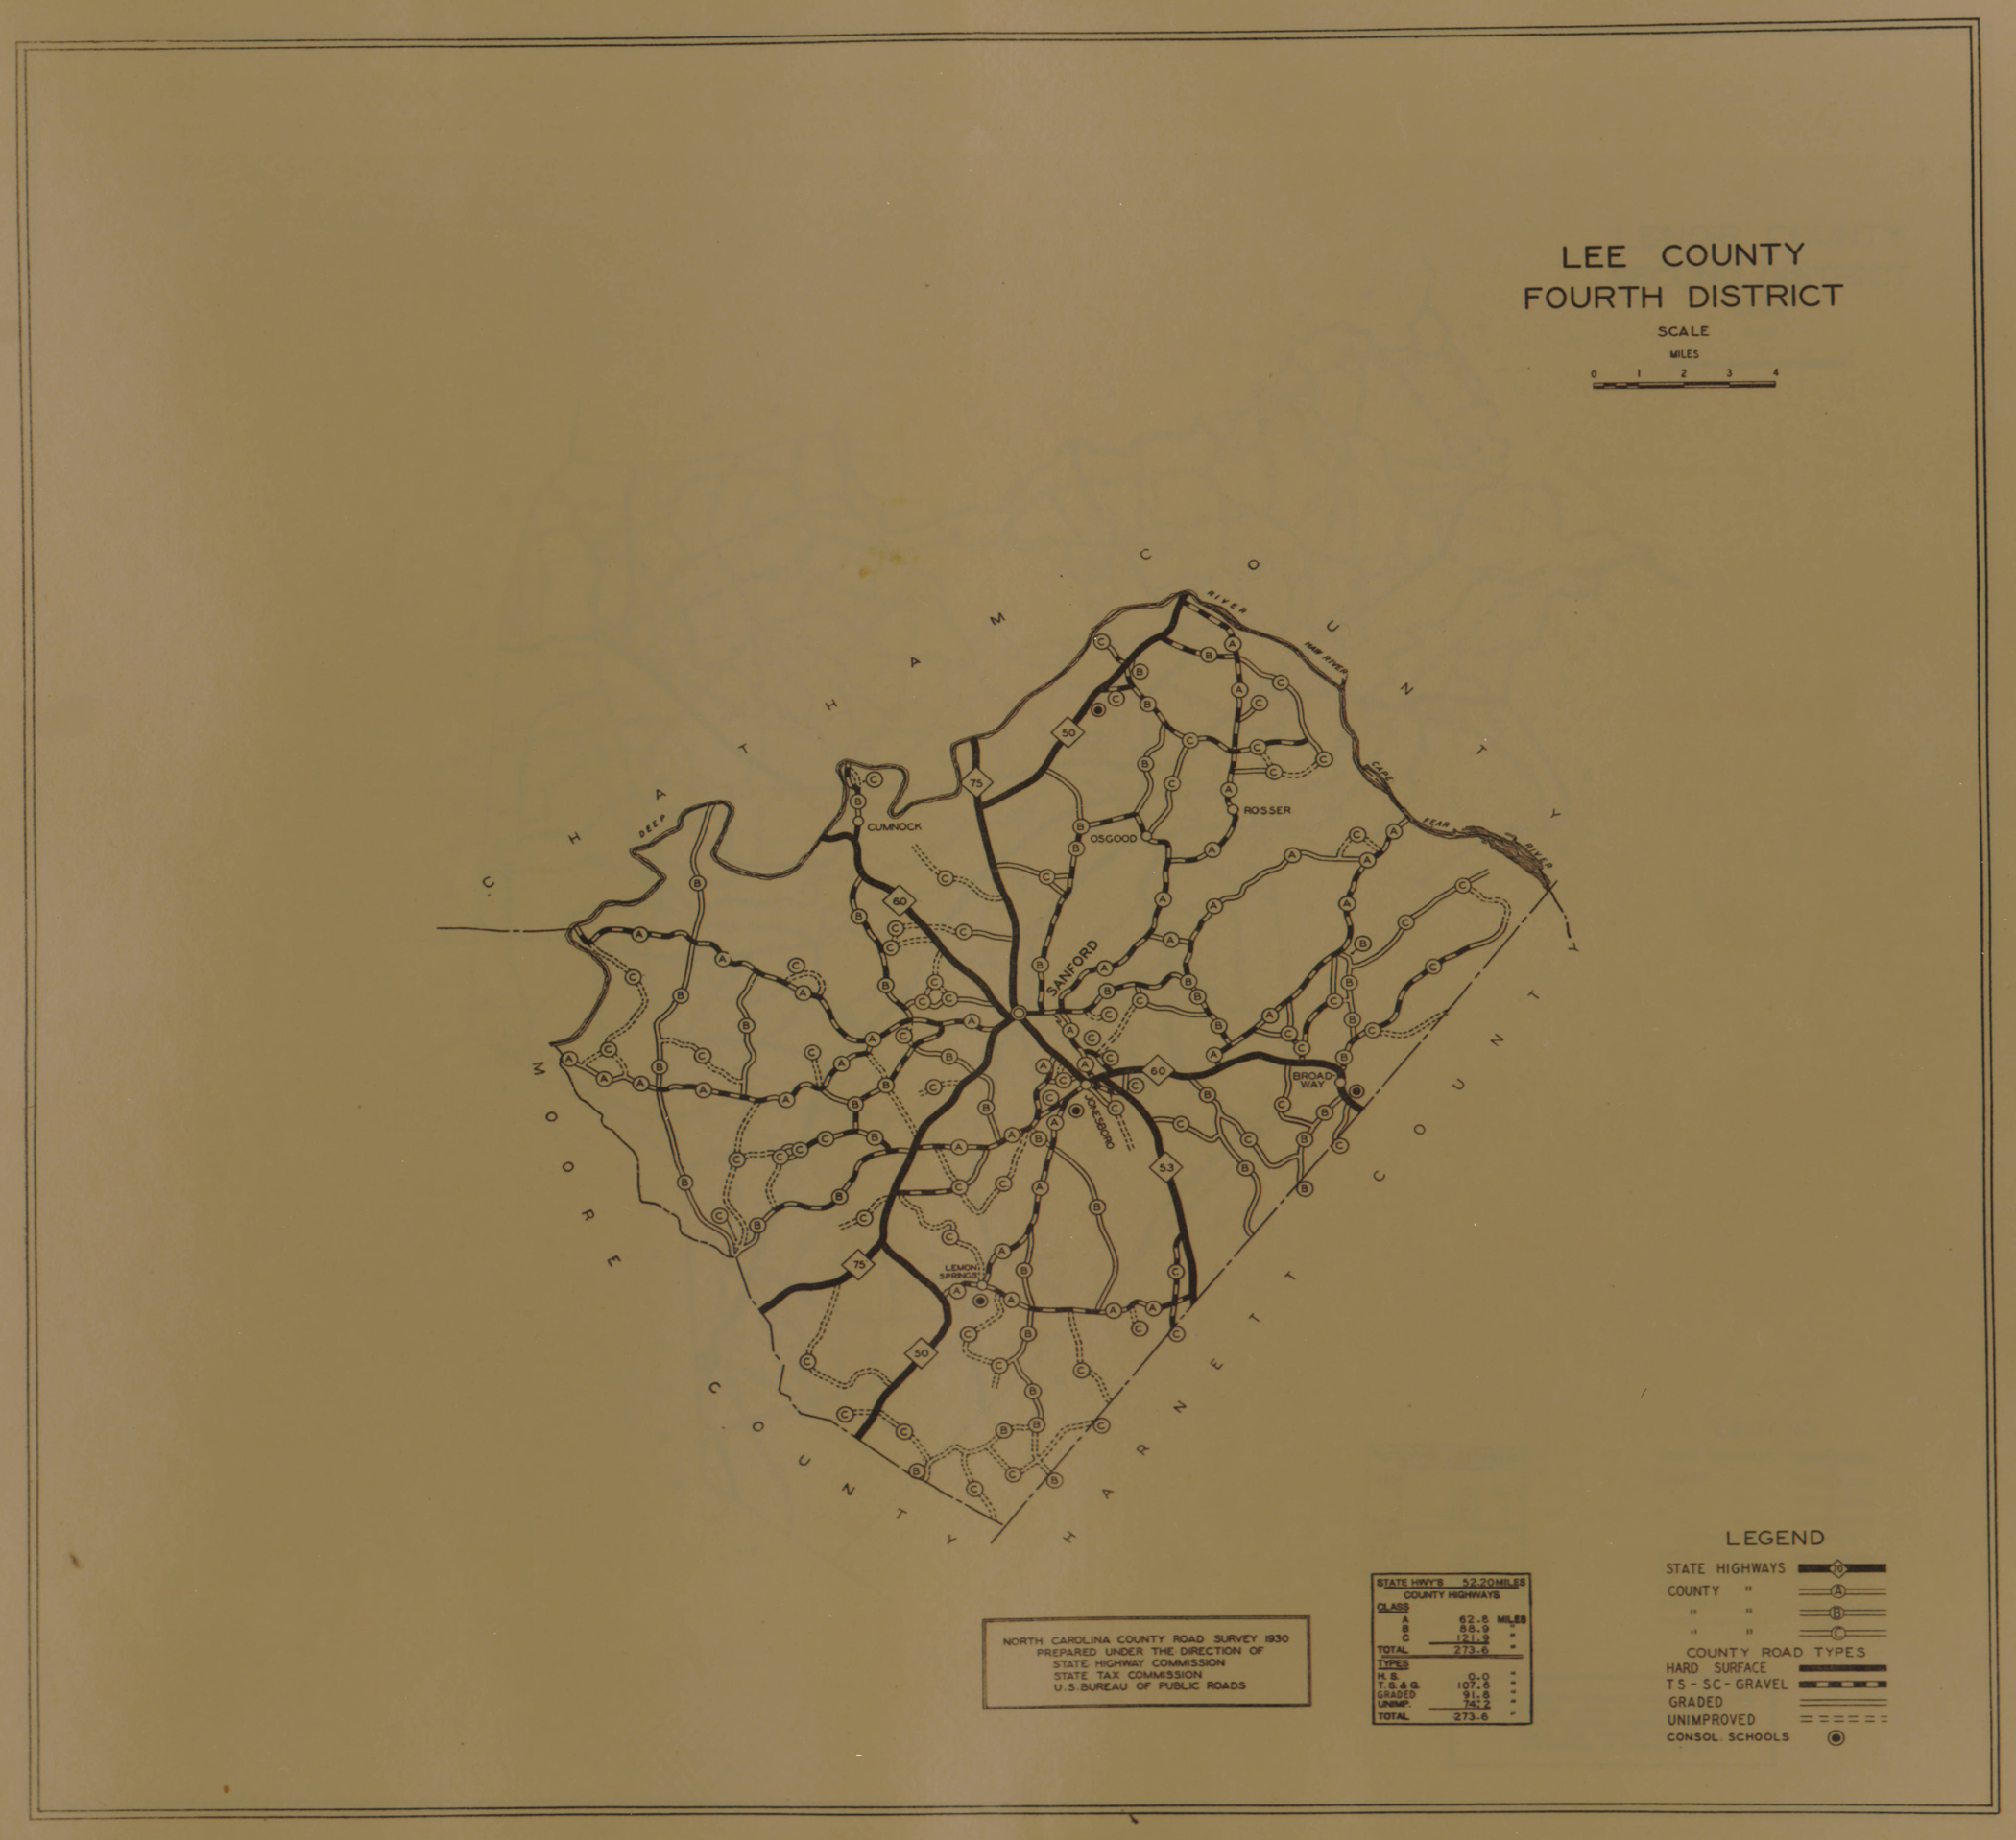 1930 Road Map of Lee County, North Carolina